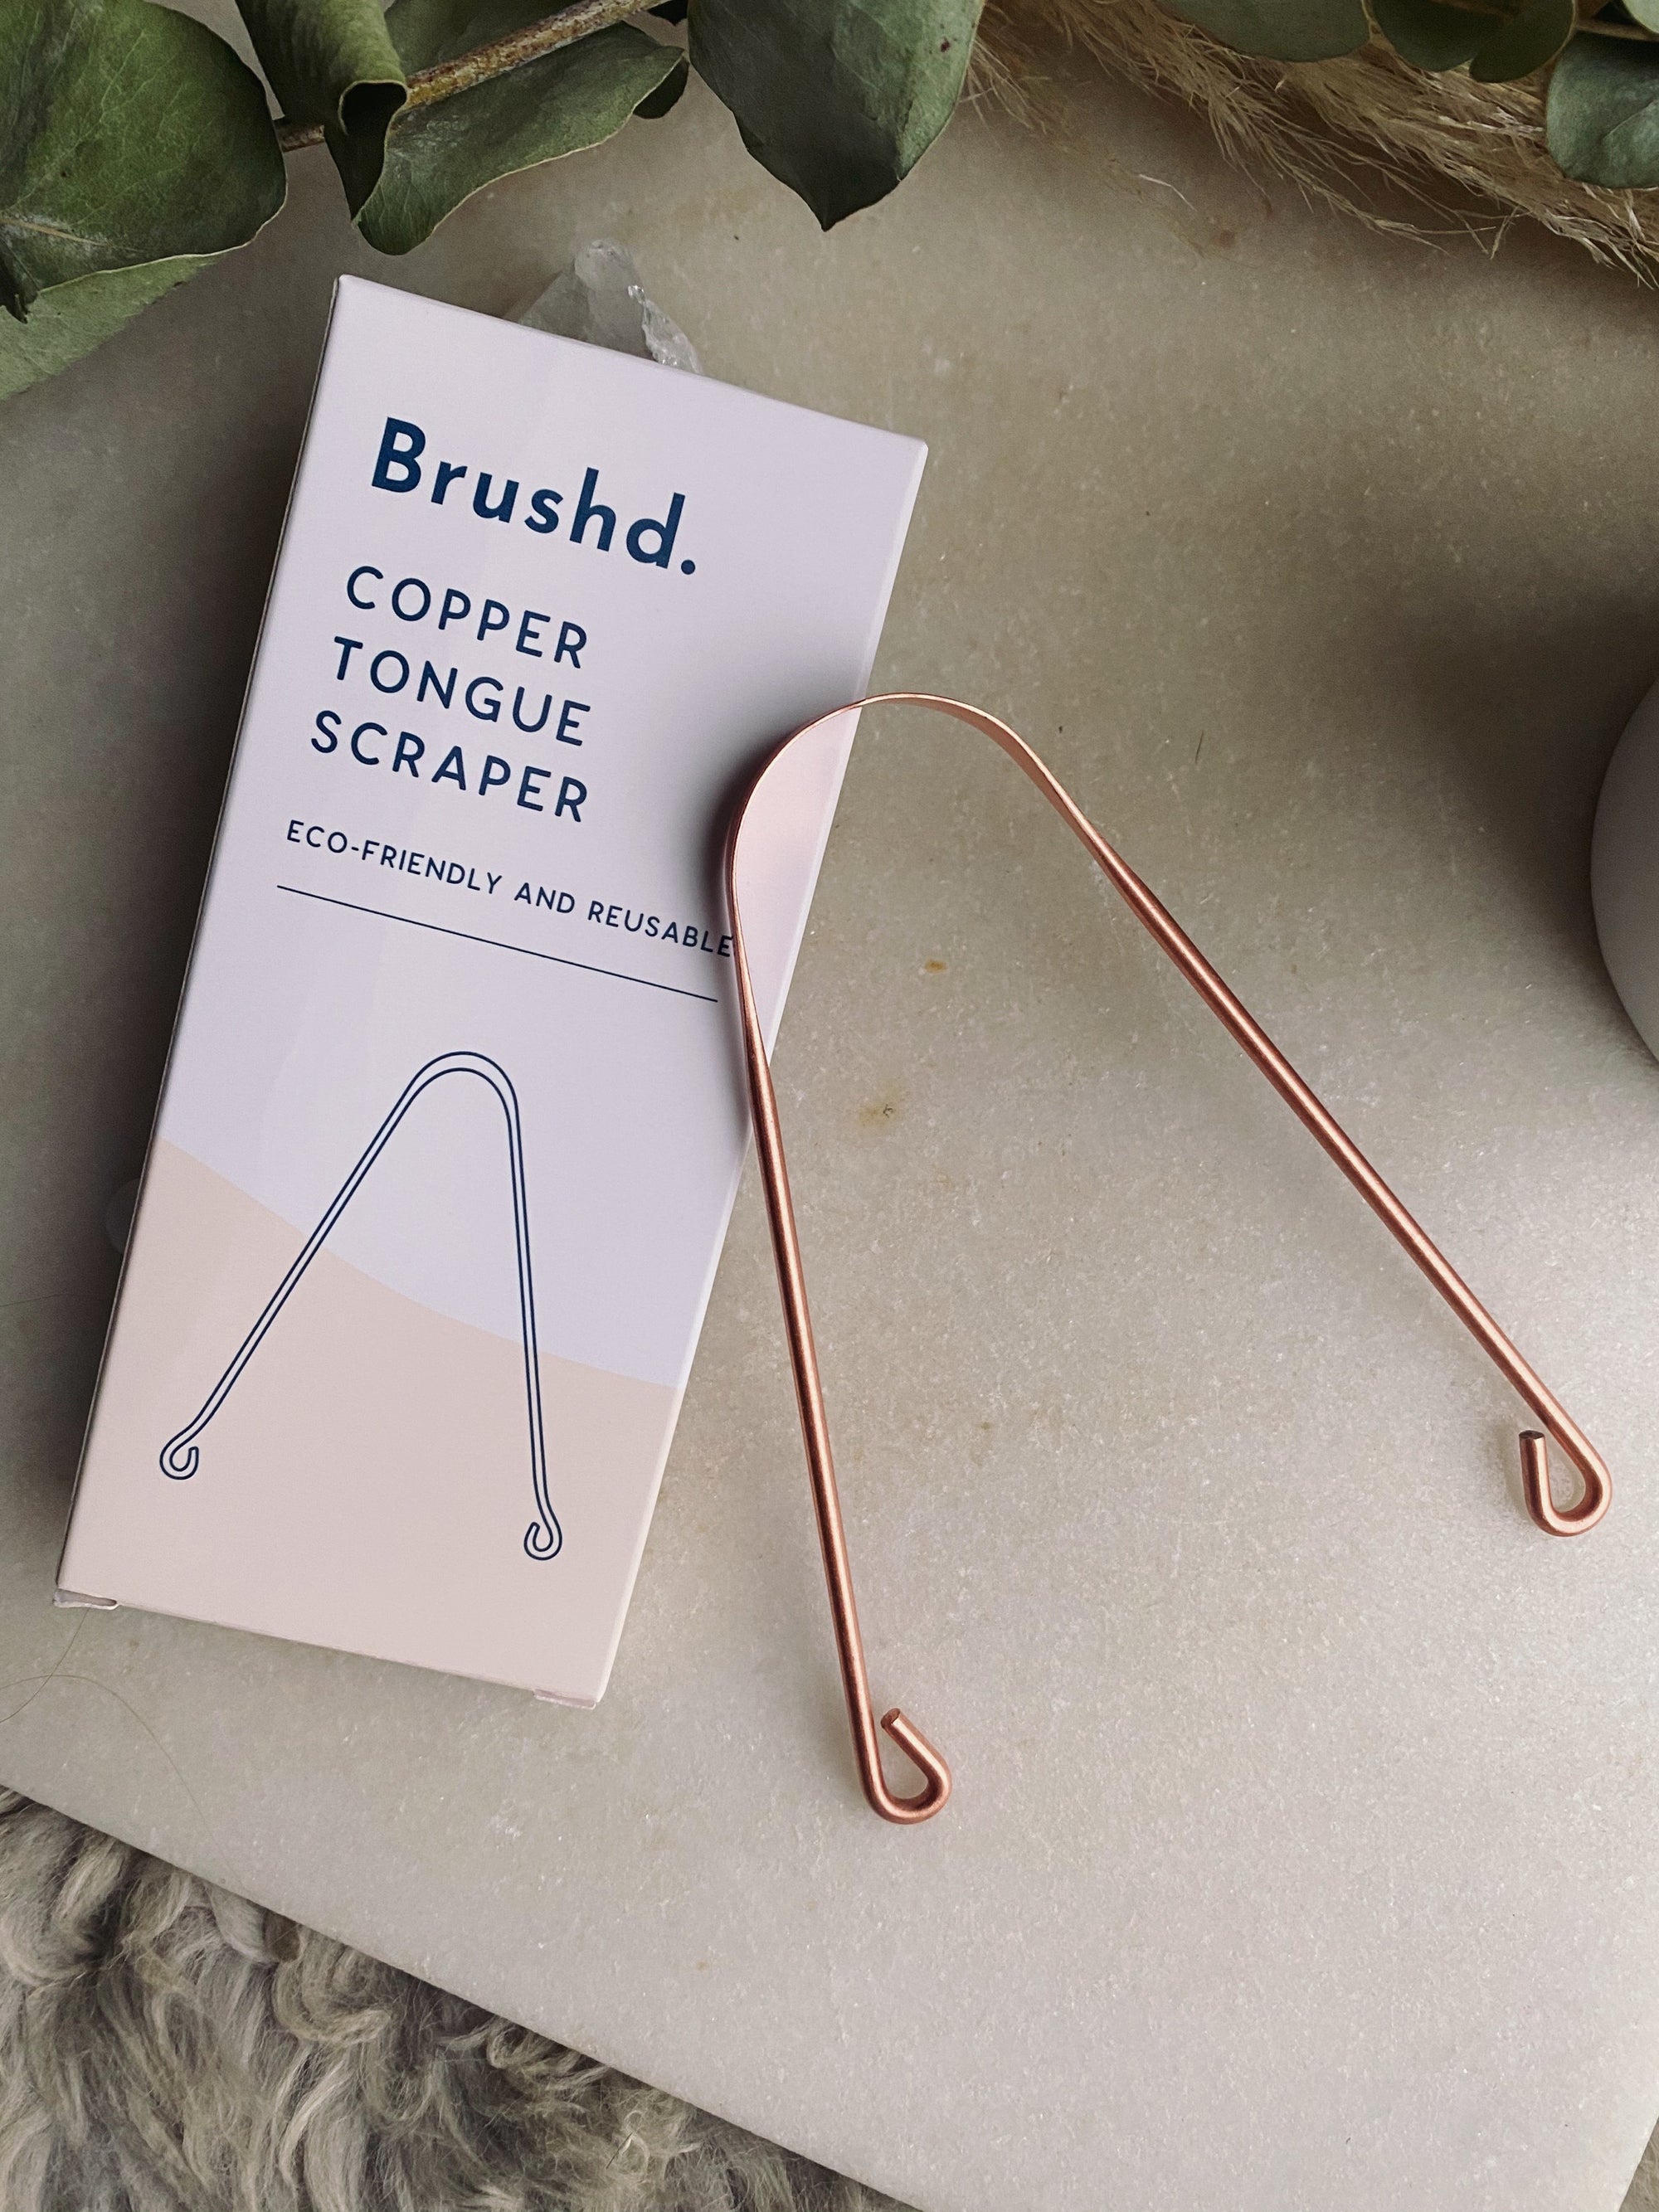 Brush'd - Copper Tongue Scraper